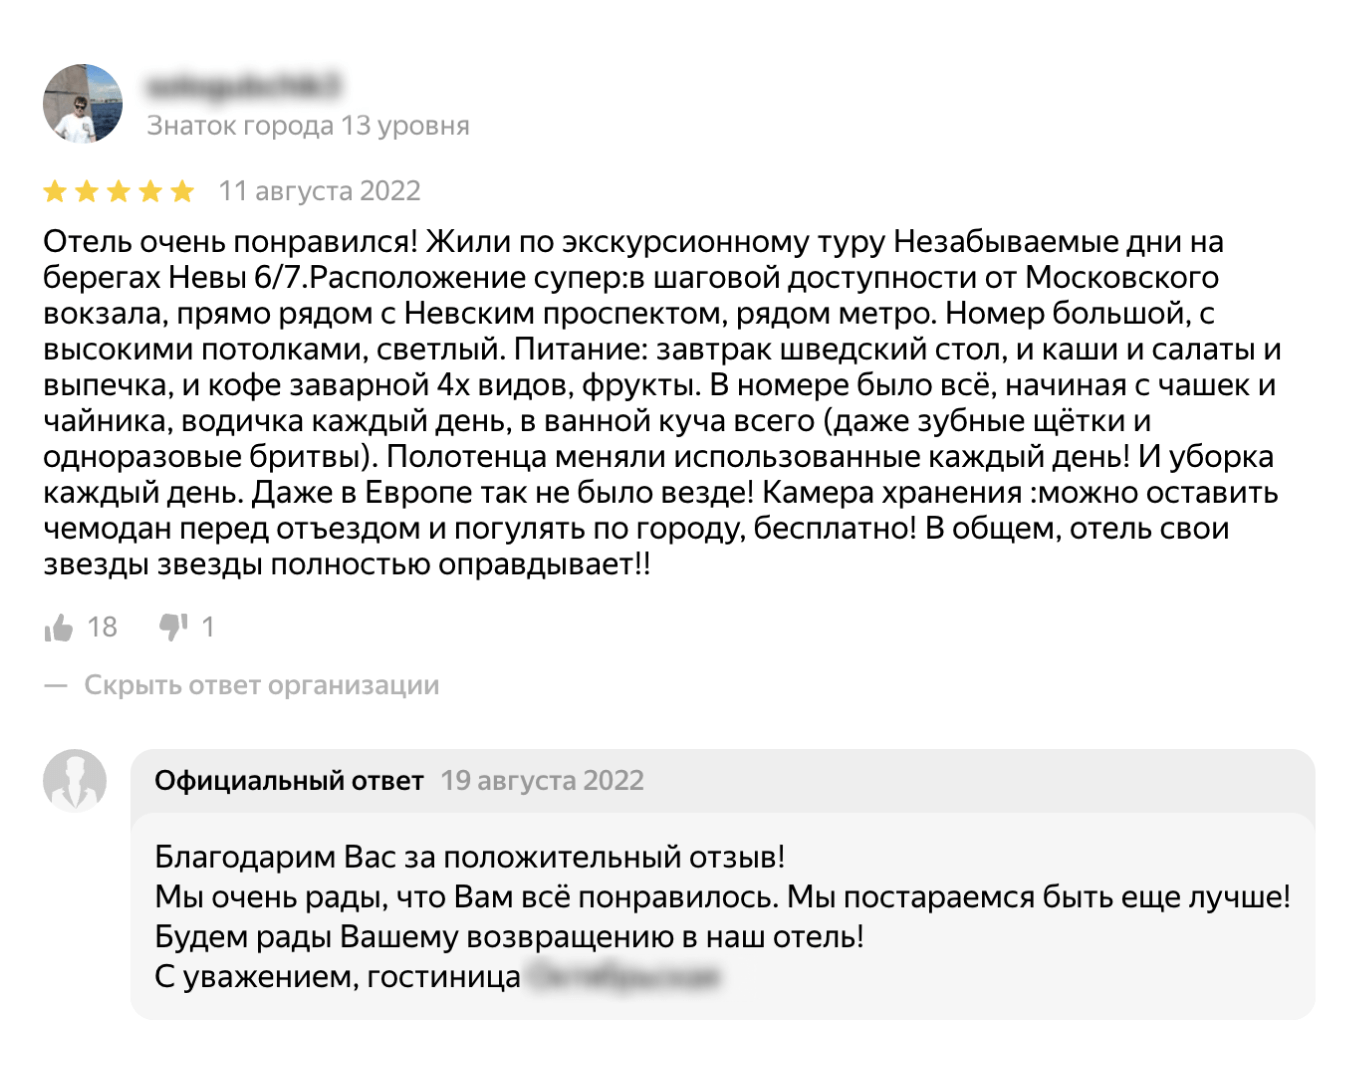 Обратная связь на положительный отзыв на Яндекс Картах